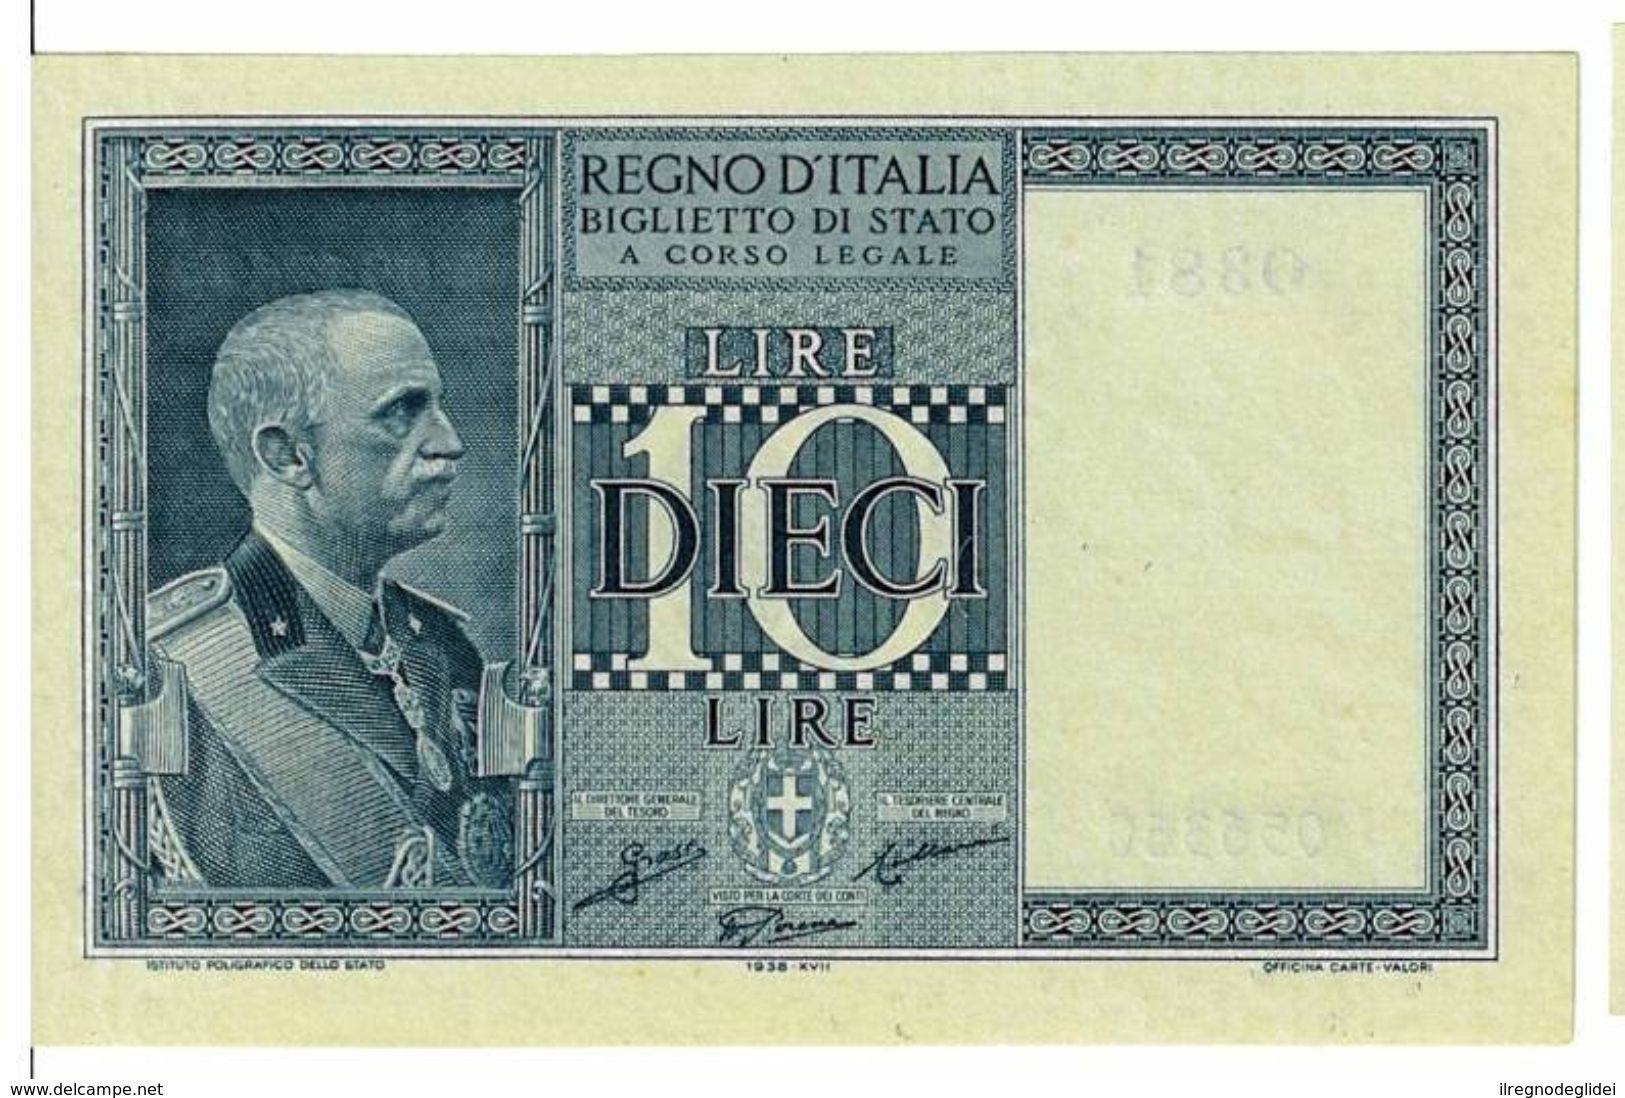 REGNO D'ITALIA - 10 LIRE IMPERO - DECRETO 1938 XVII - FIOR DI STAMPA - GRASSI,COLLARI,PORENA - 0381 - 056317 - Italia – 10 Lire